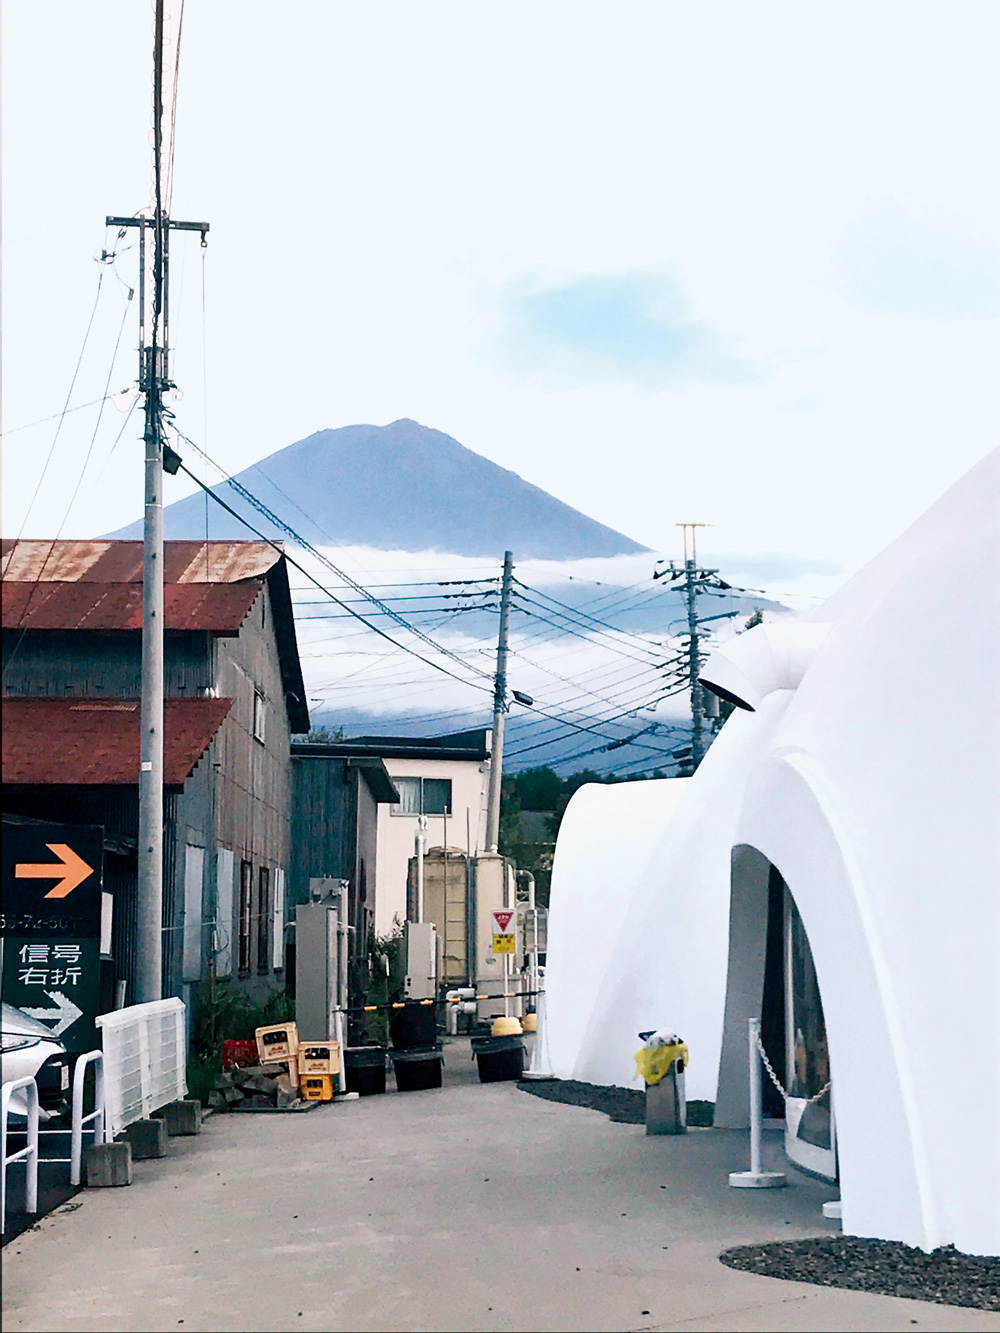 「不動茶屋」（Houtou Fudou）白色棉花糖似的造型，也與背景富士山相呼應。（攝影：李清志）